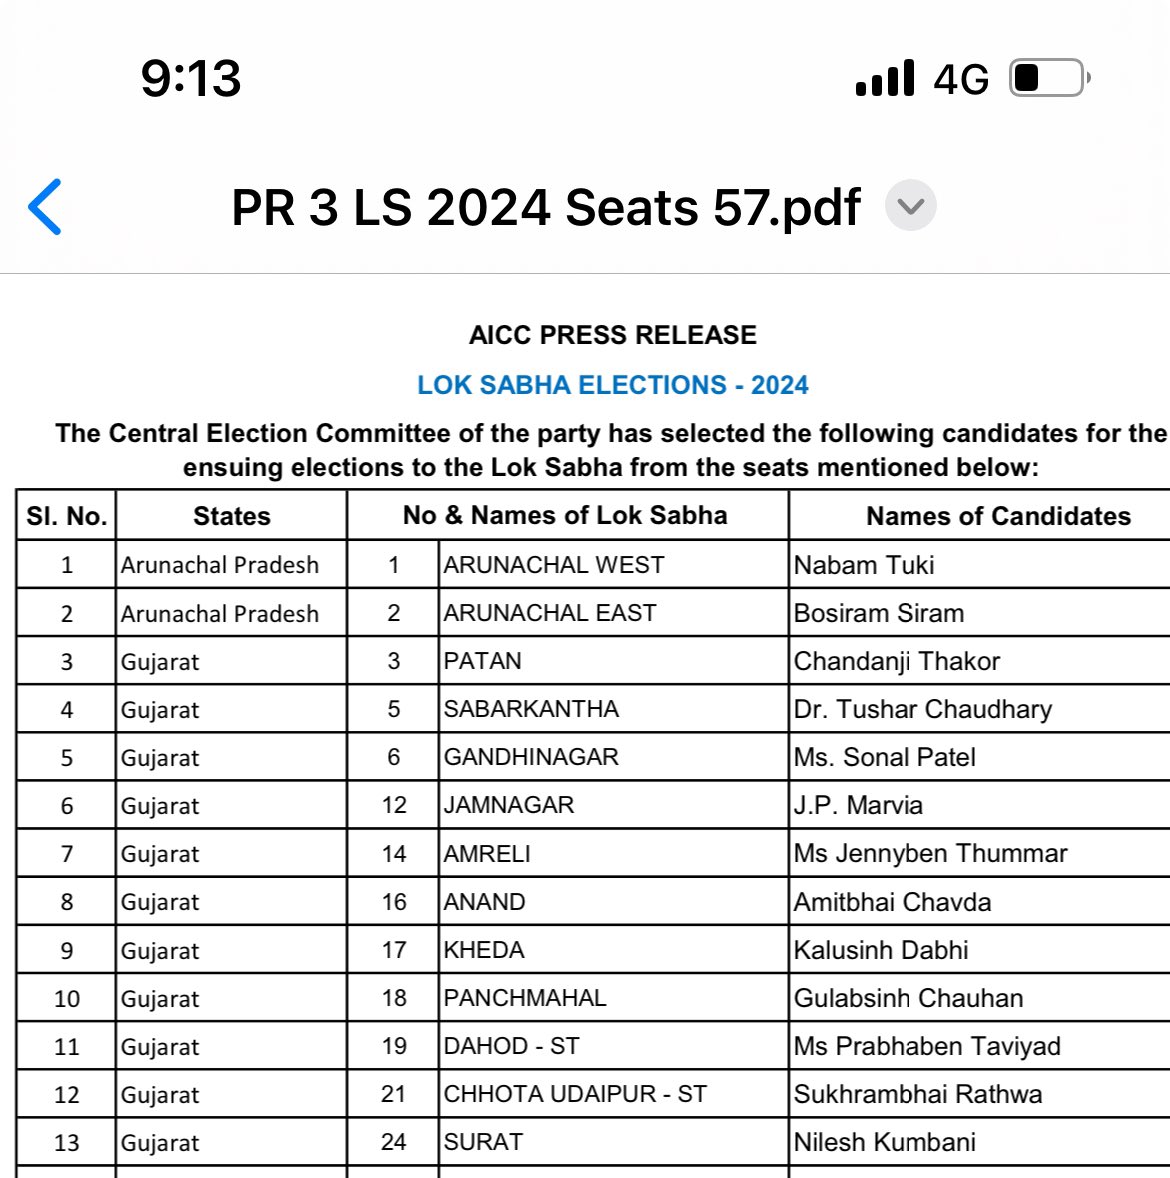 #GujaratCongress 

11 उम्मीदवारों की सूची जारी।